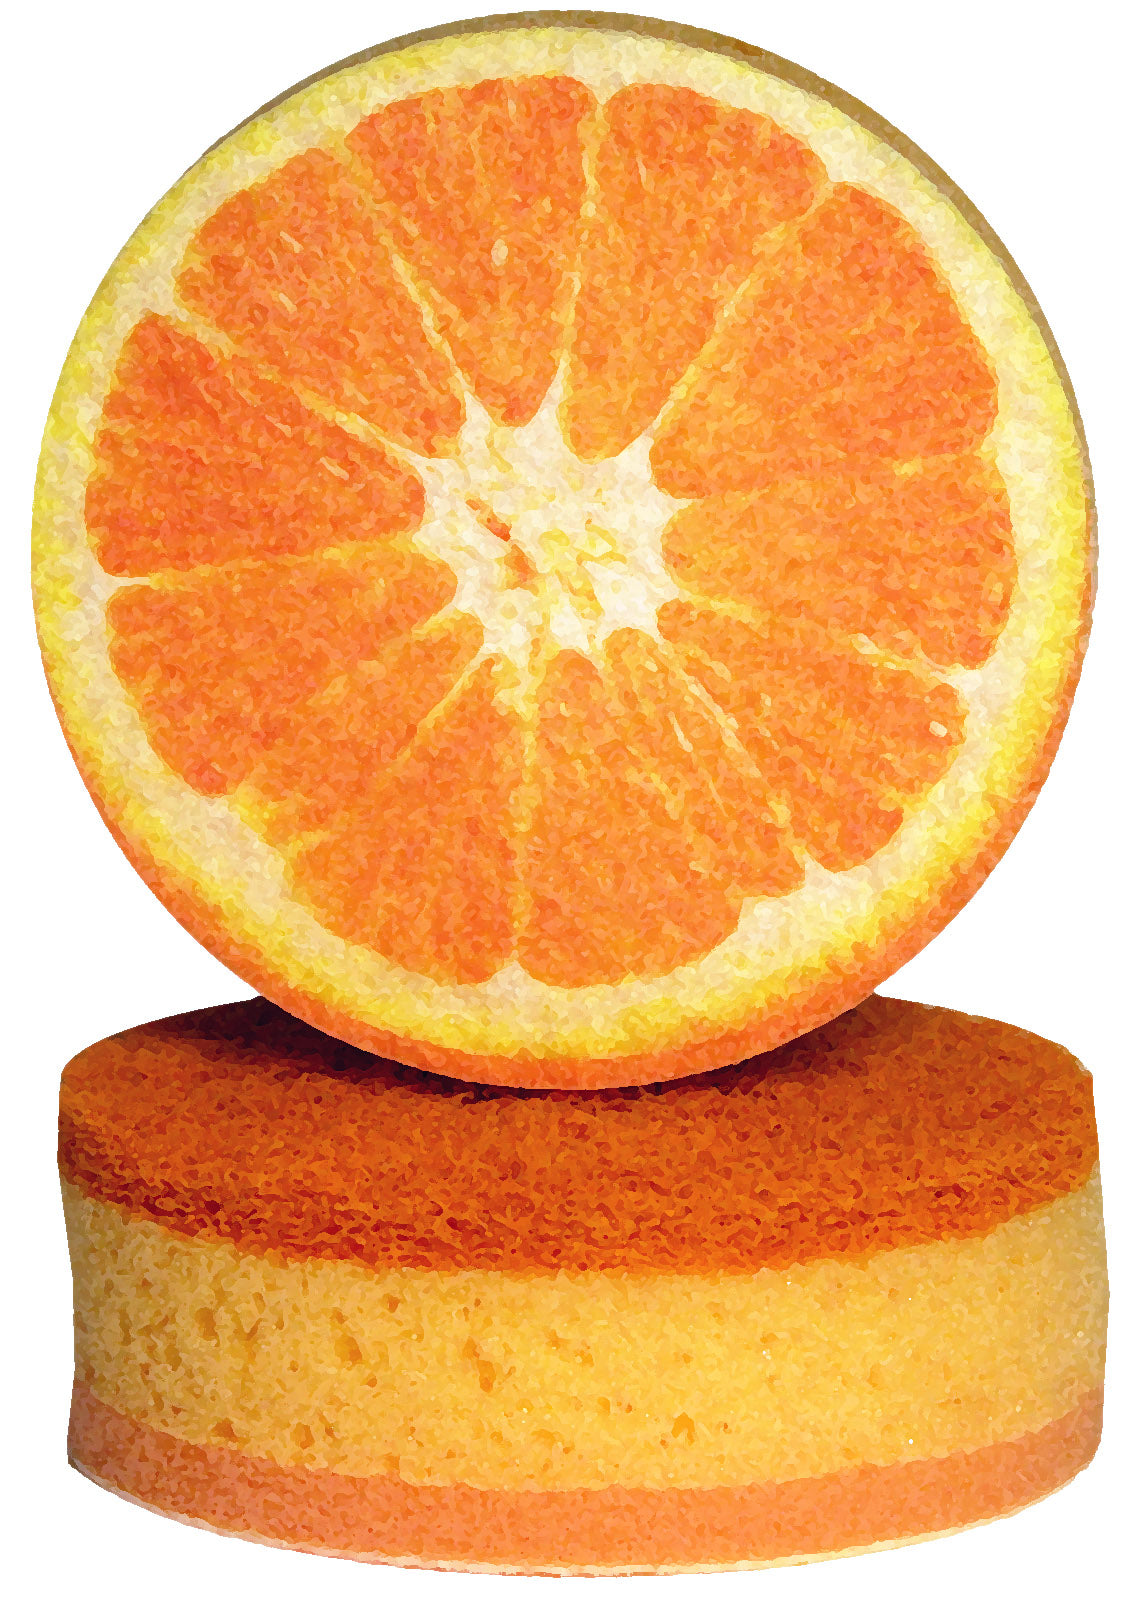 647 Orange Fruit Design Sponges